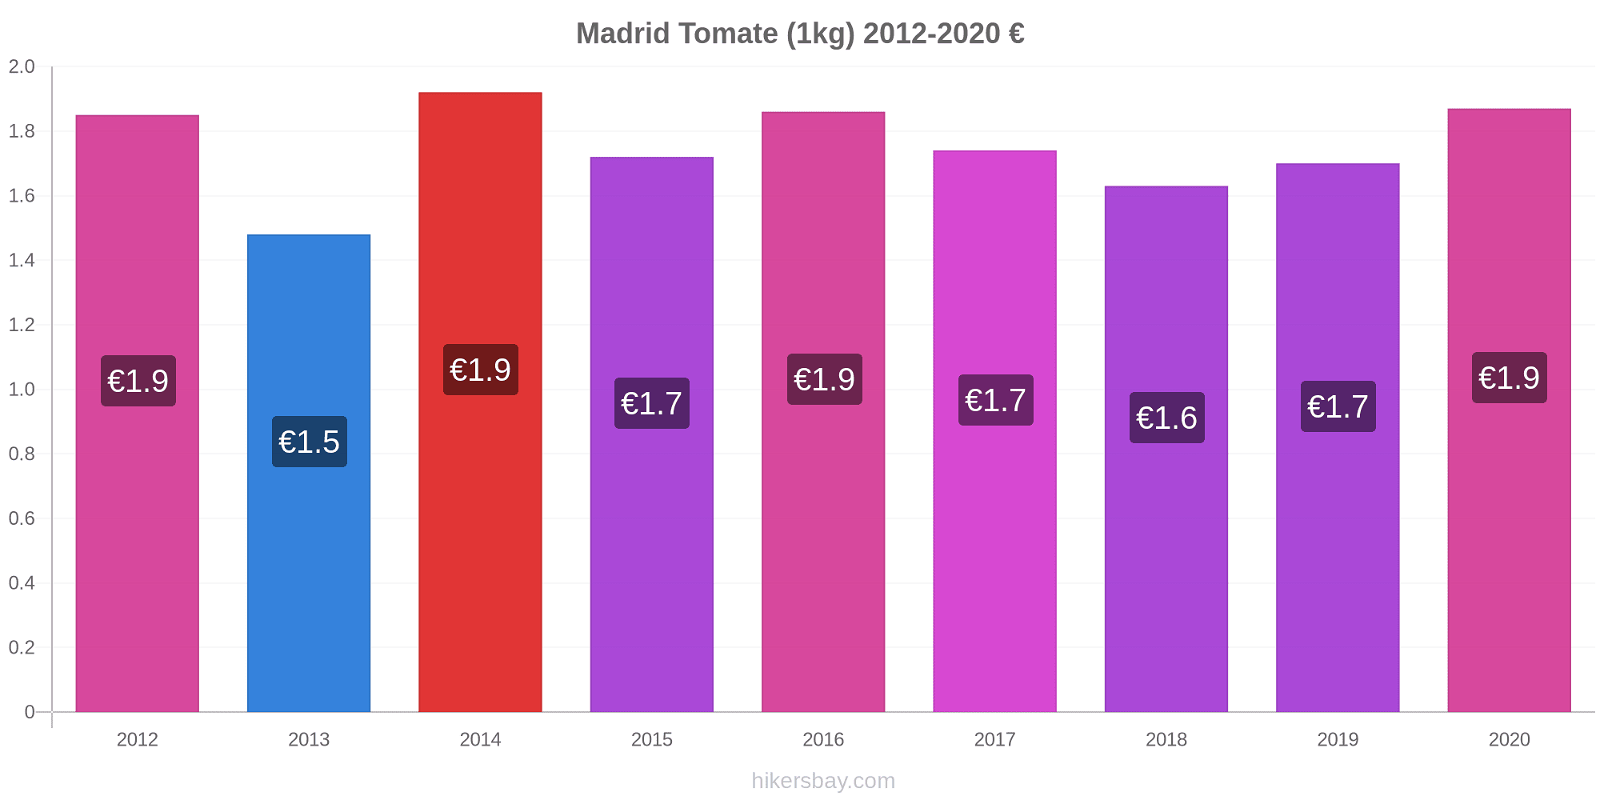 Madrid variação de preço Tomate (1kg) hikersbay.com